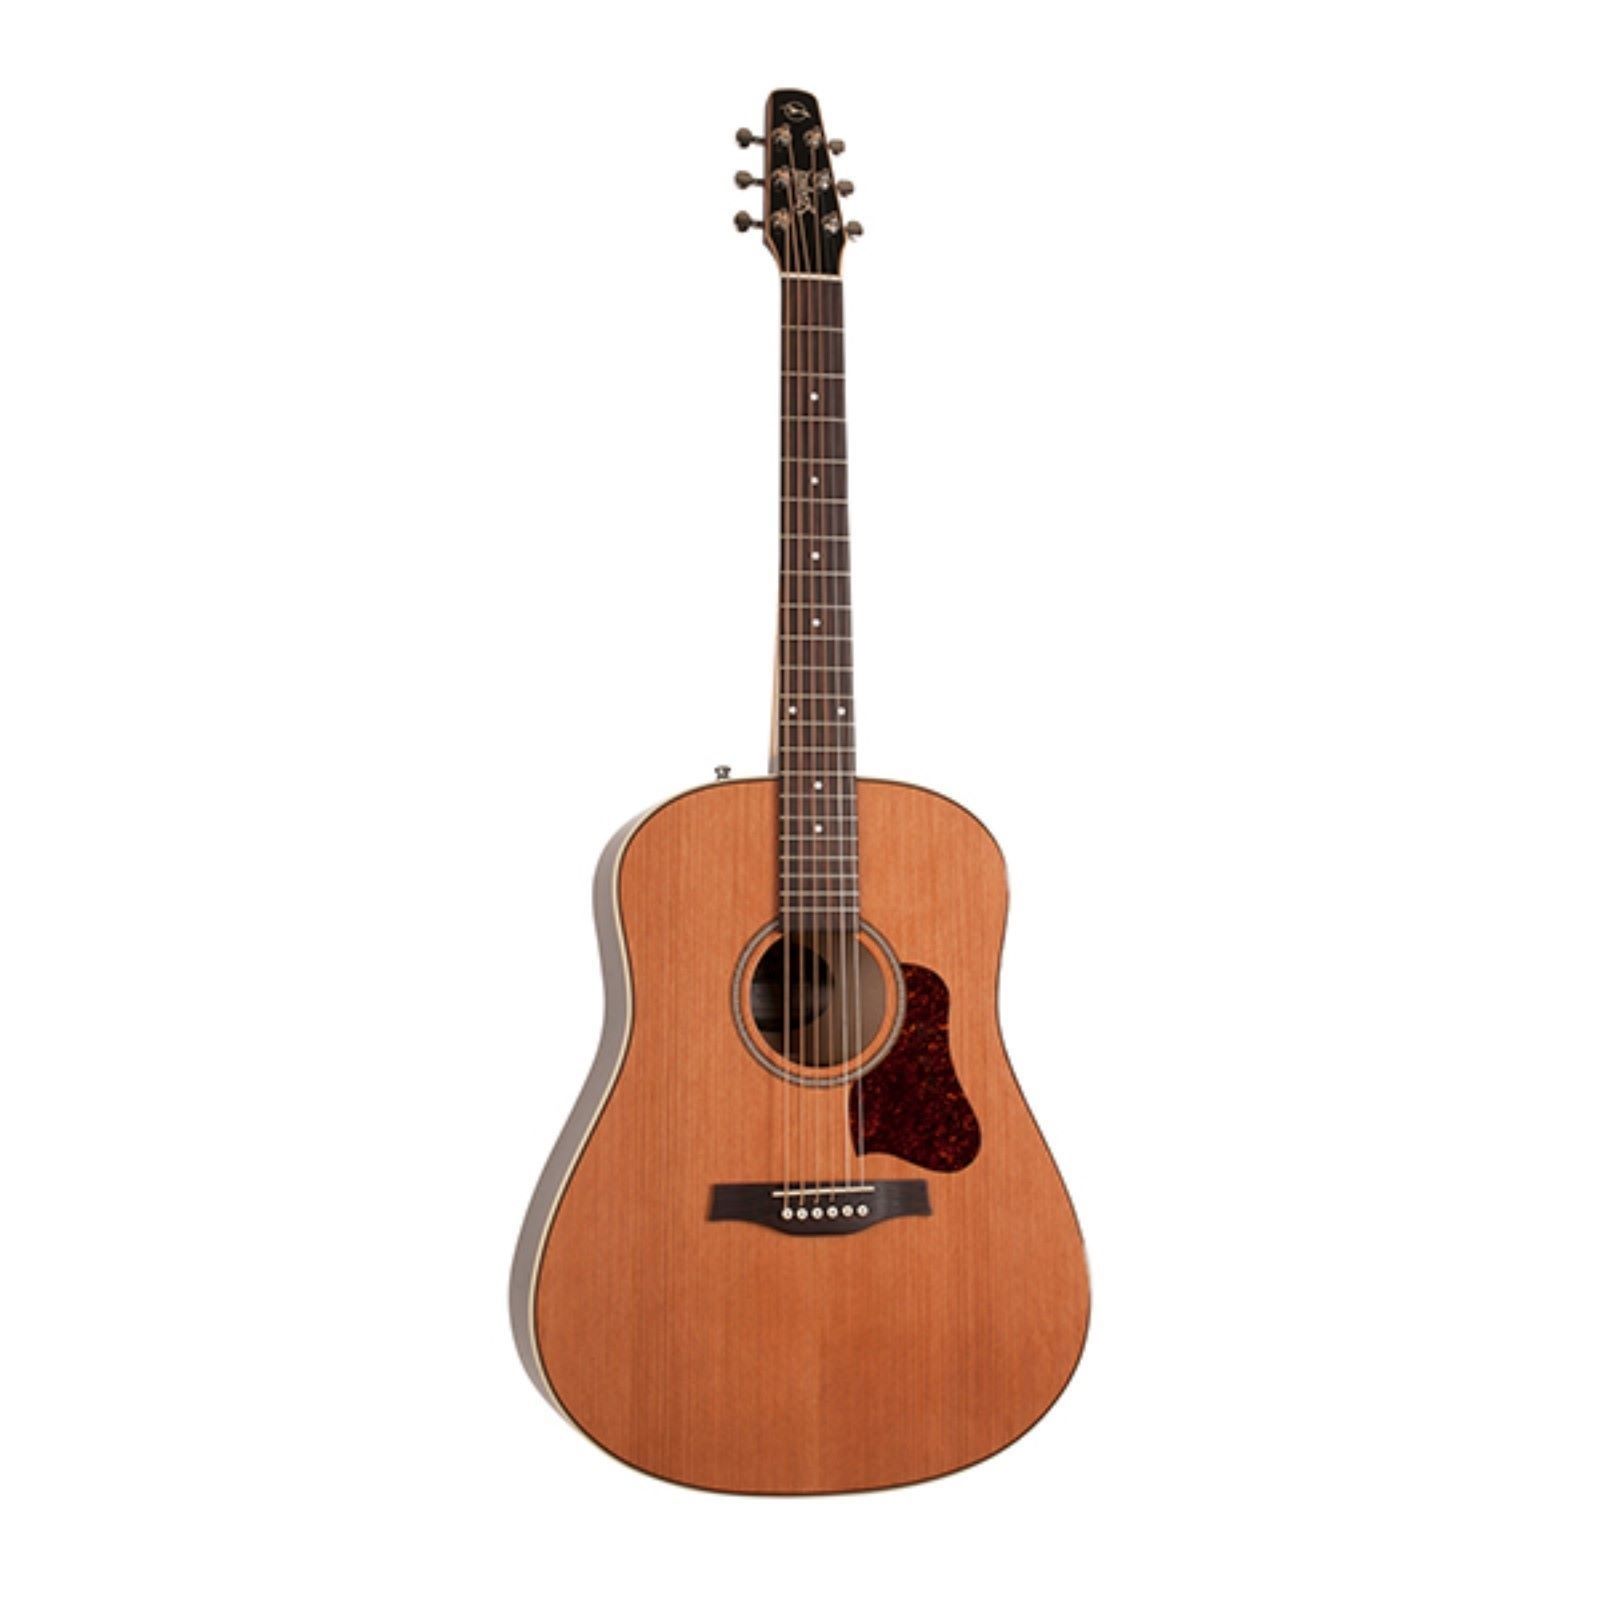 Картинка Электро-акустическая гитара Seagull 042494 Coastline Momentum A/E HG - лучшая цена, доставка по России